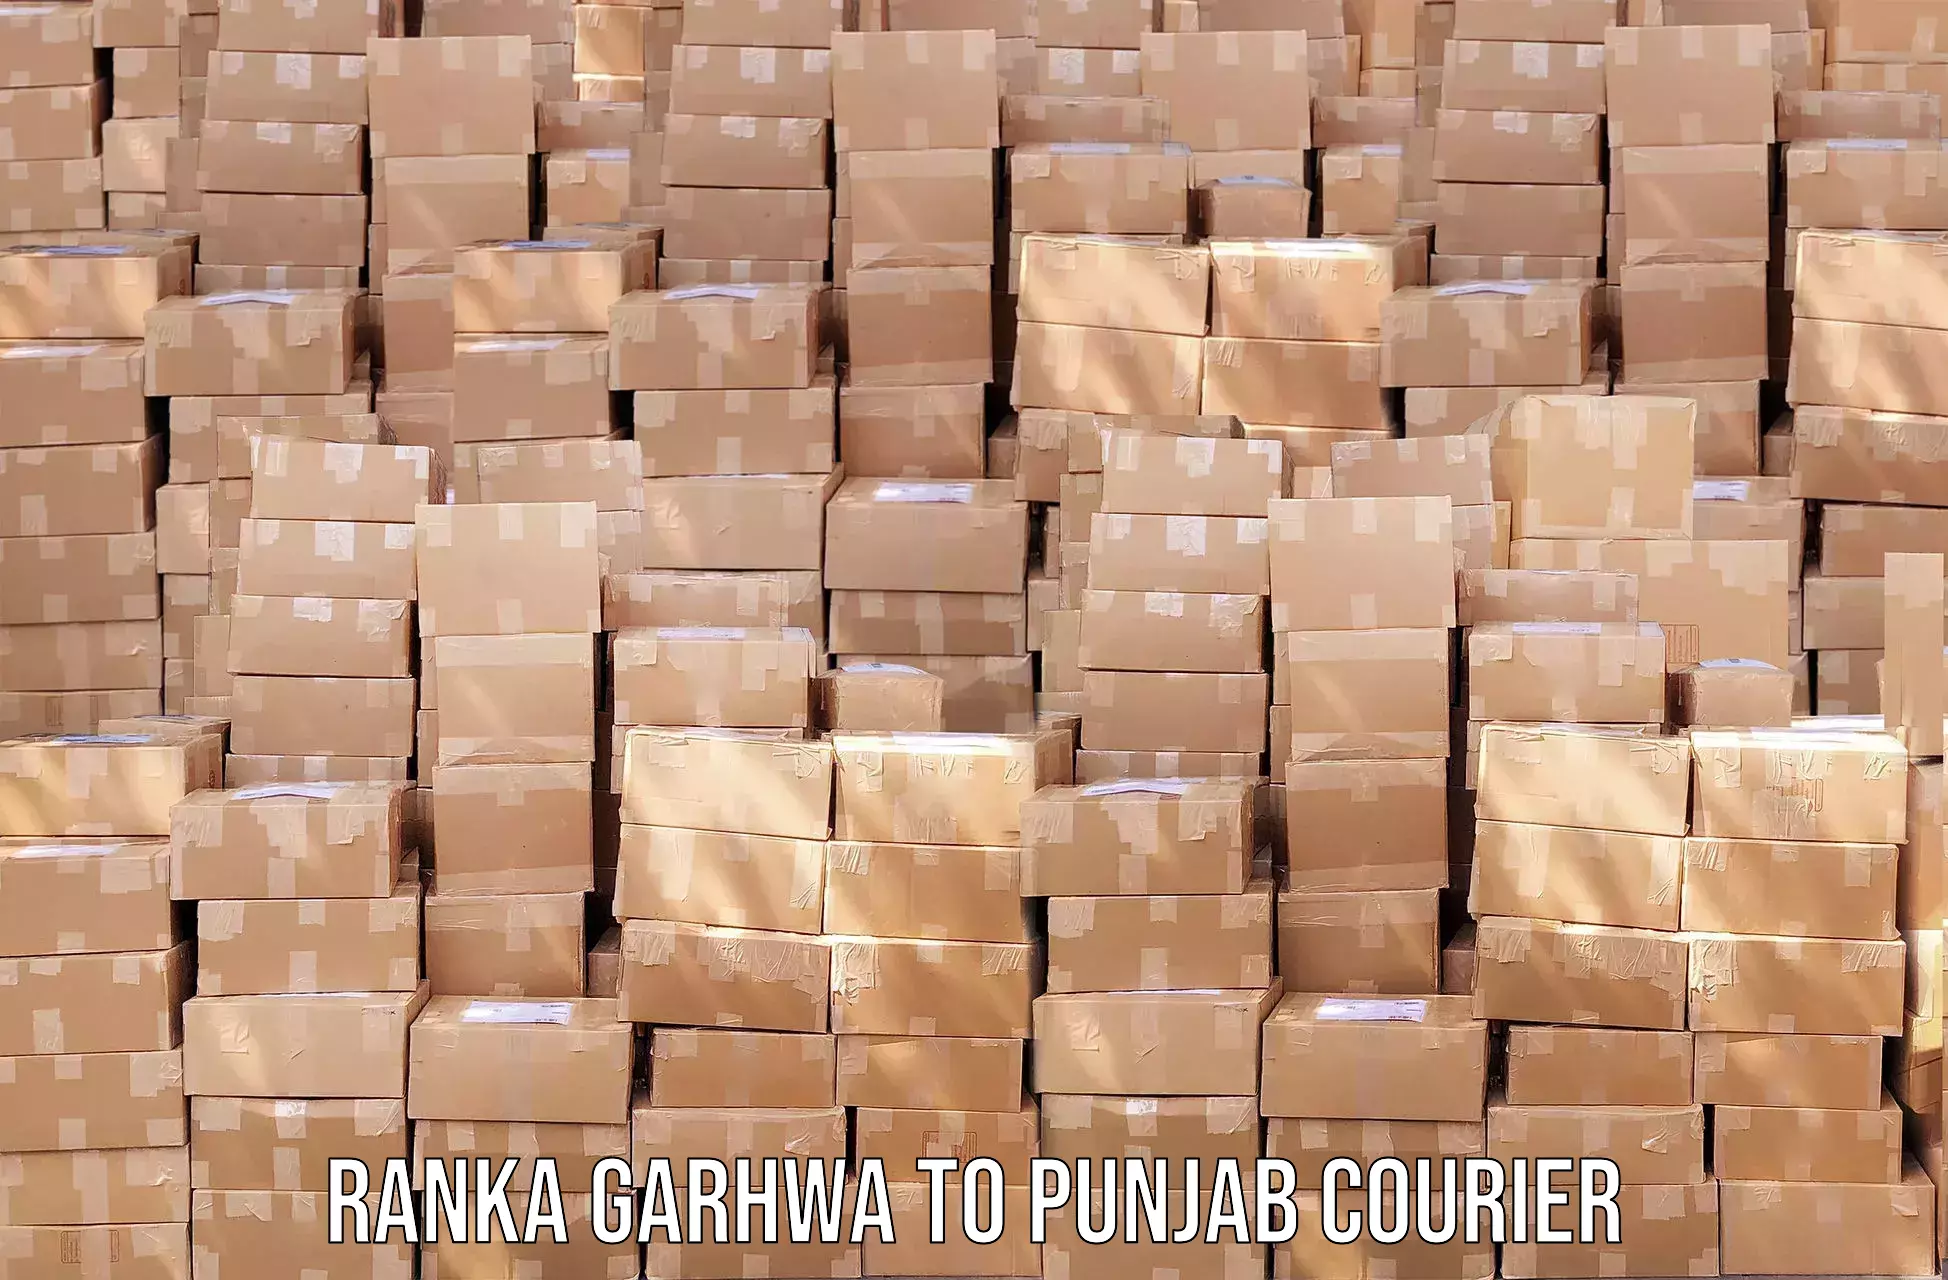 Door-to-door freight service Ranka Garhwa to Batala